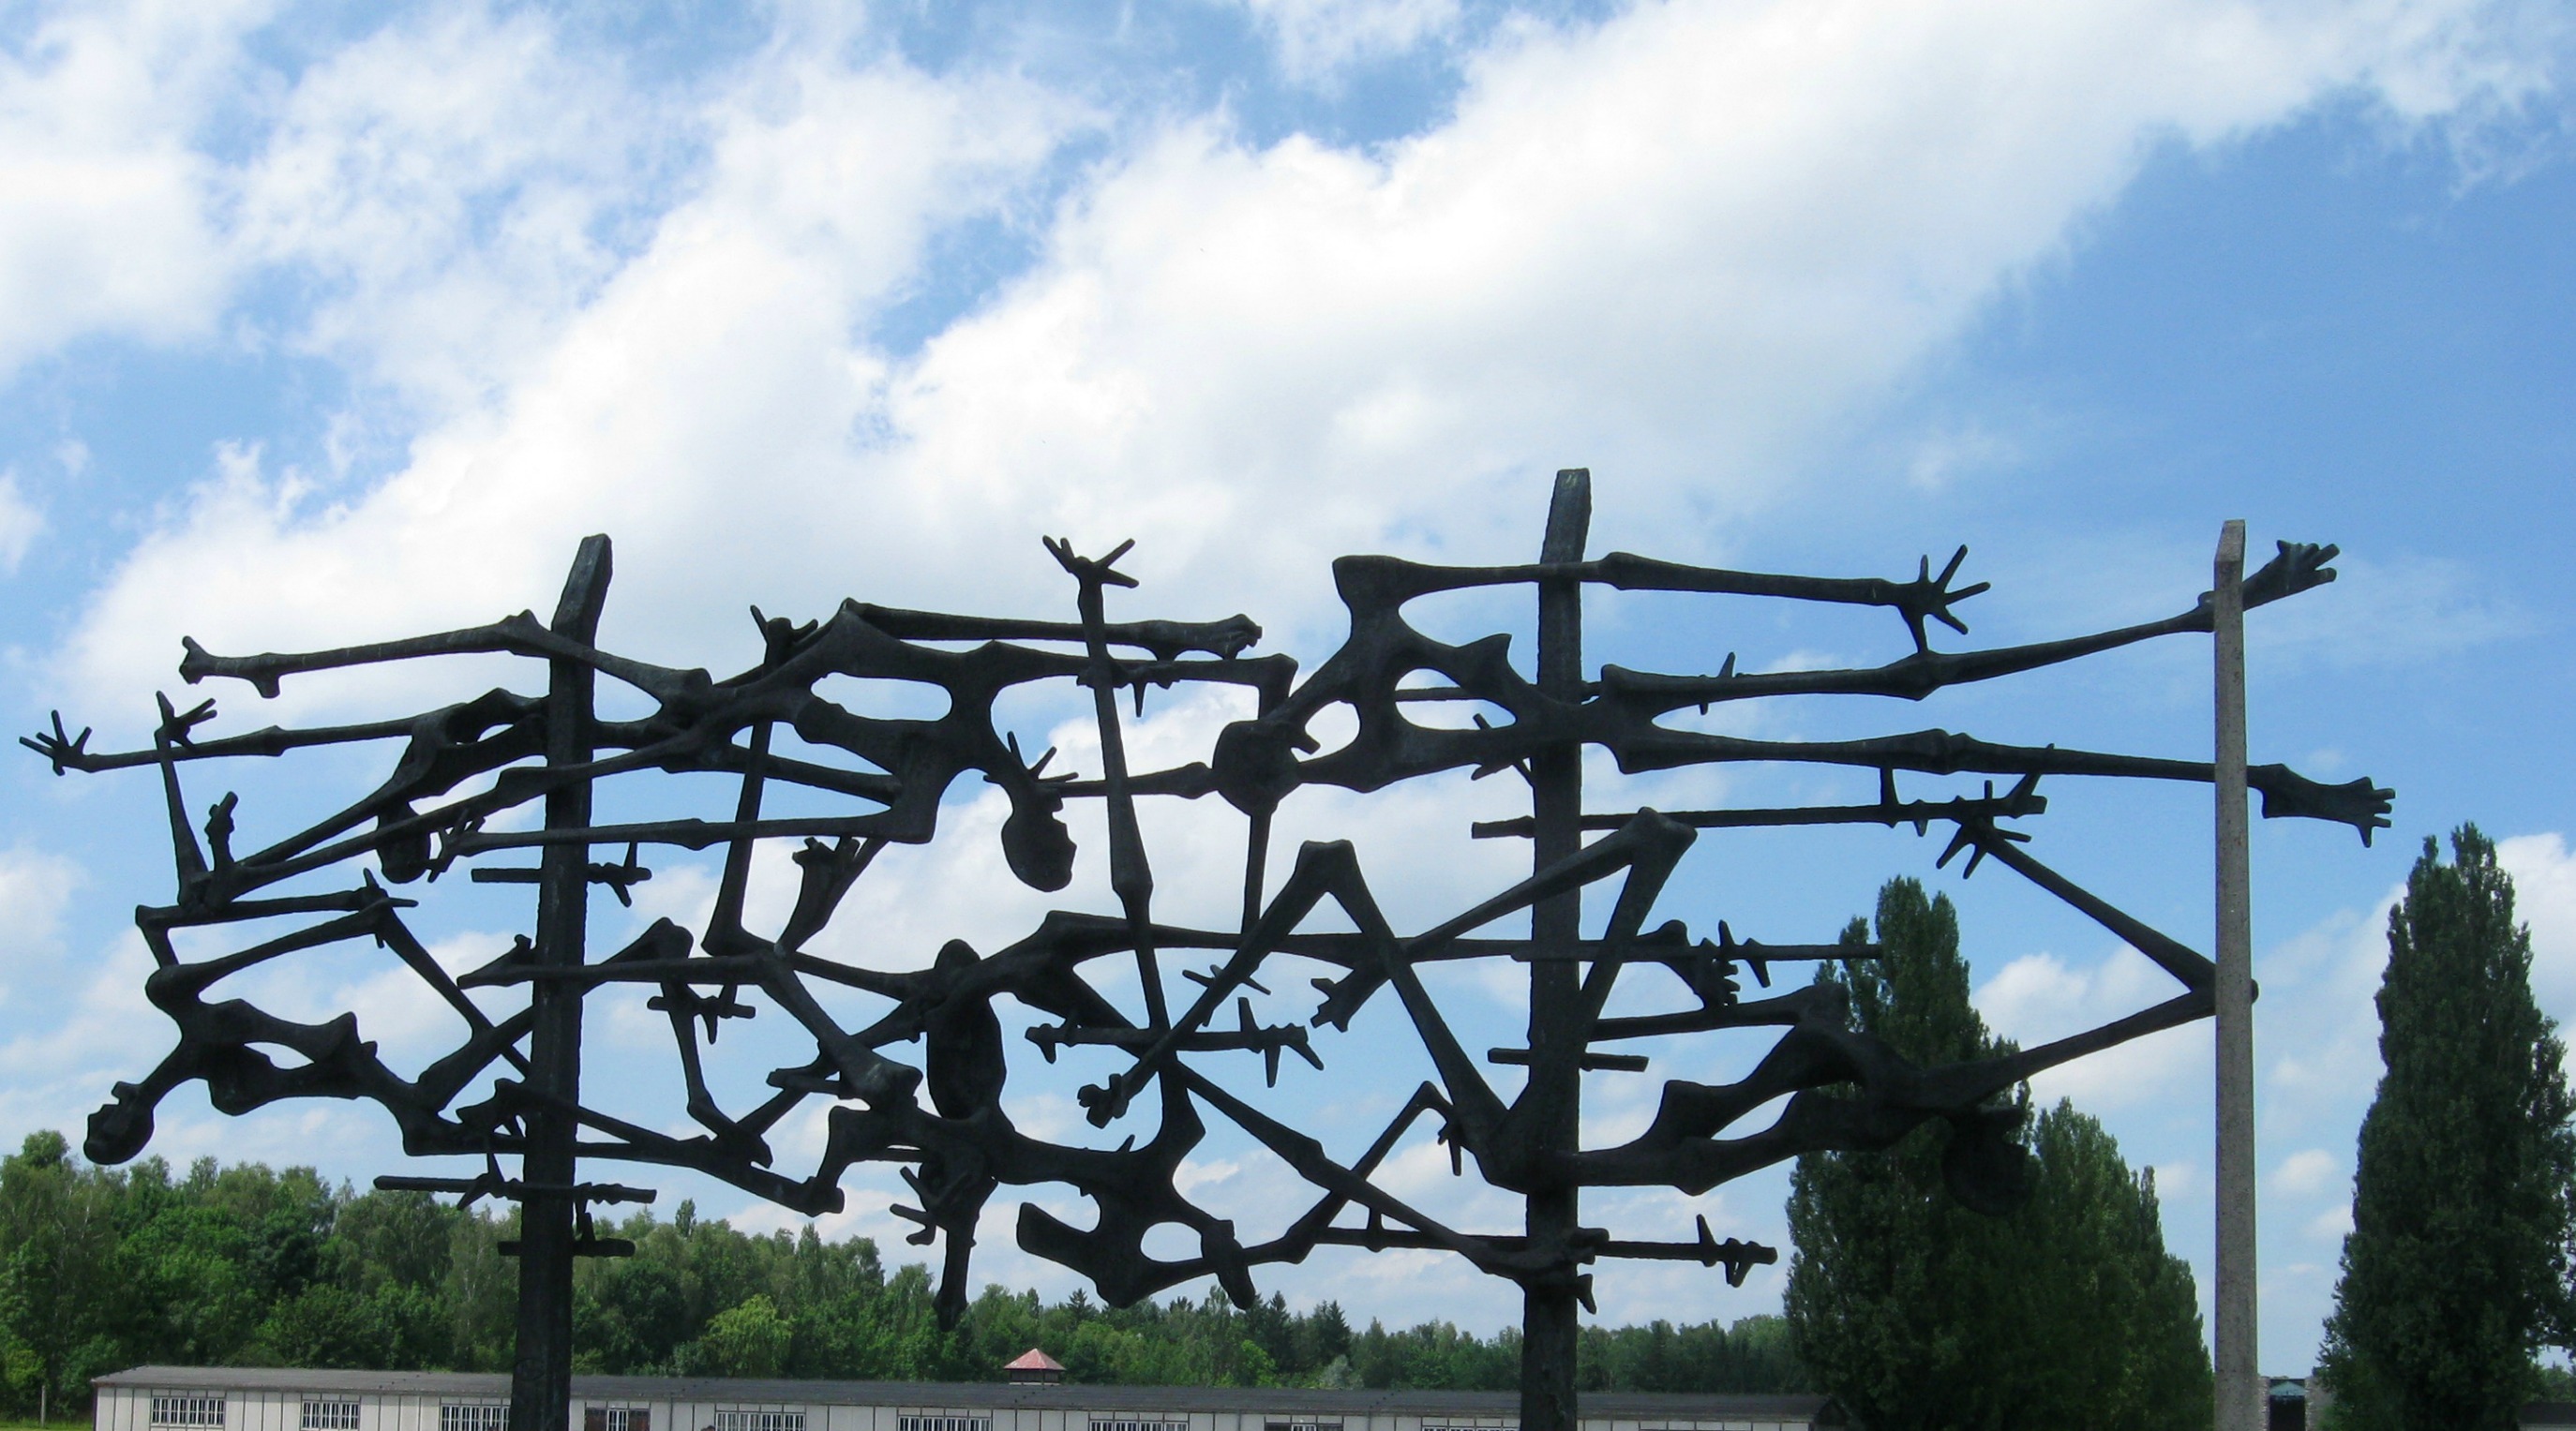 Dachau Concentration Camp